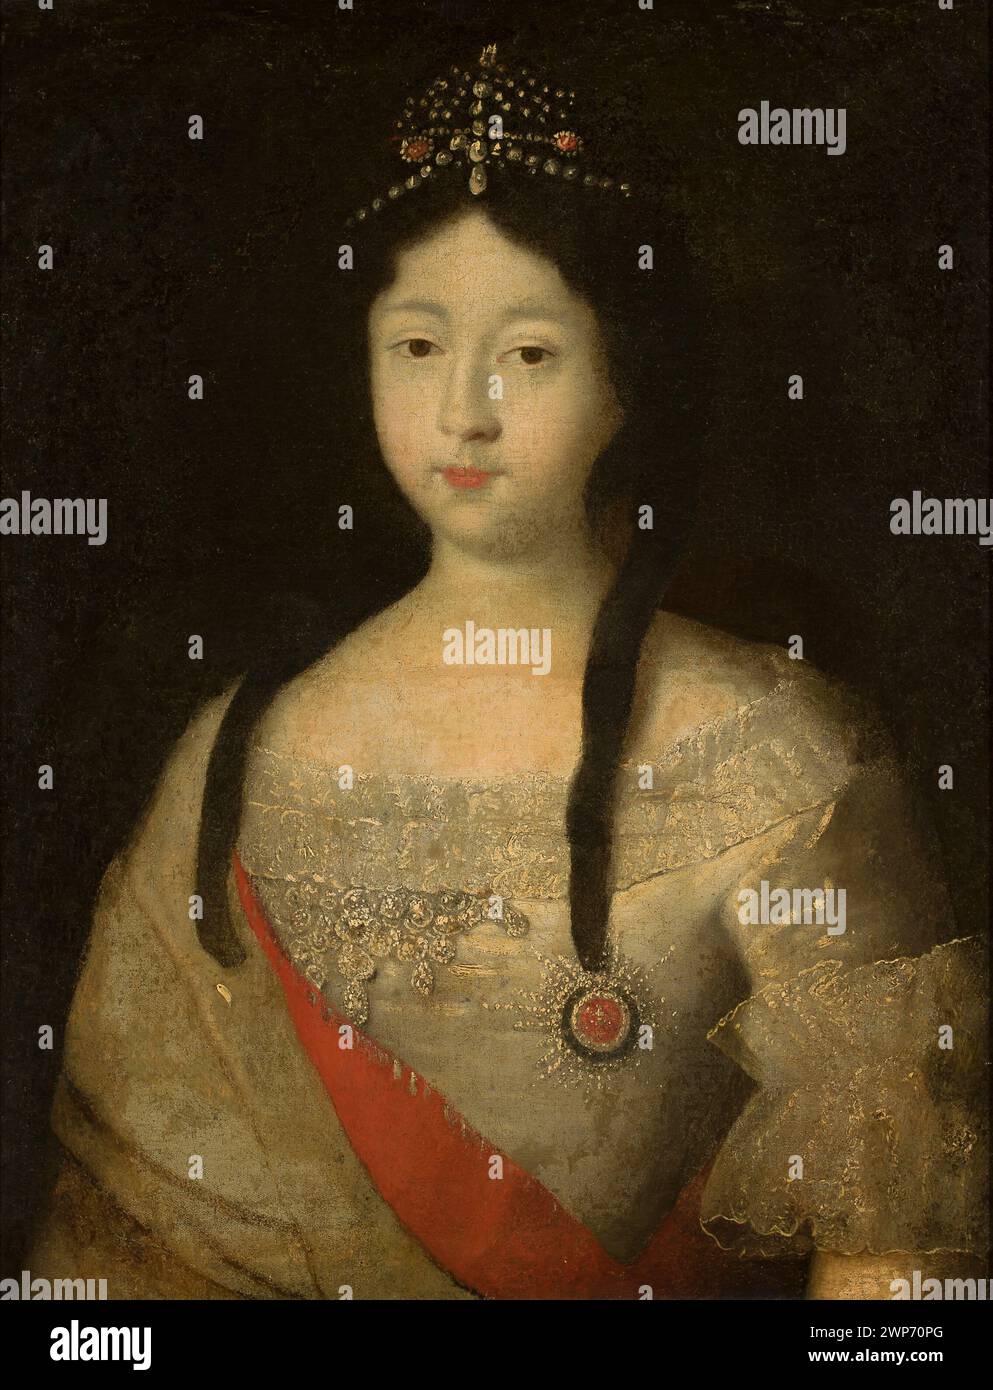 Ritratto del libro Anna Petrovna; Caravaque, Luigi (1684-1754); XVIII secolo (1701-00-00-1800-00-00-00);aristocrazia, pittura francese, ritratti di donne Foto Stock